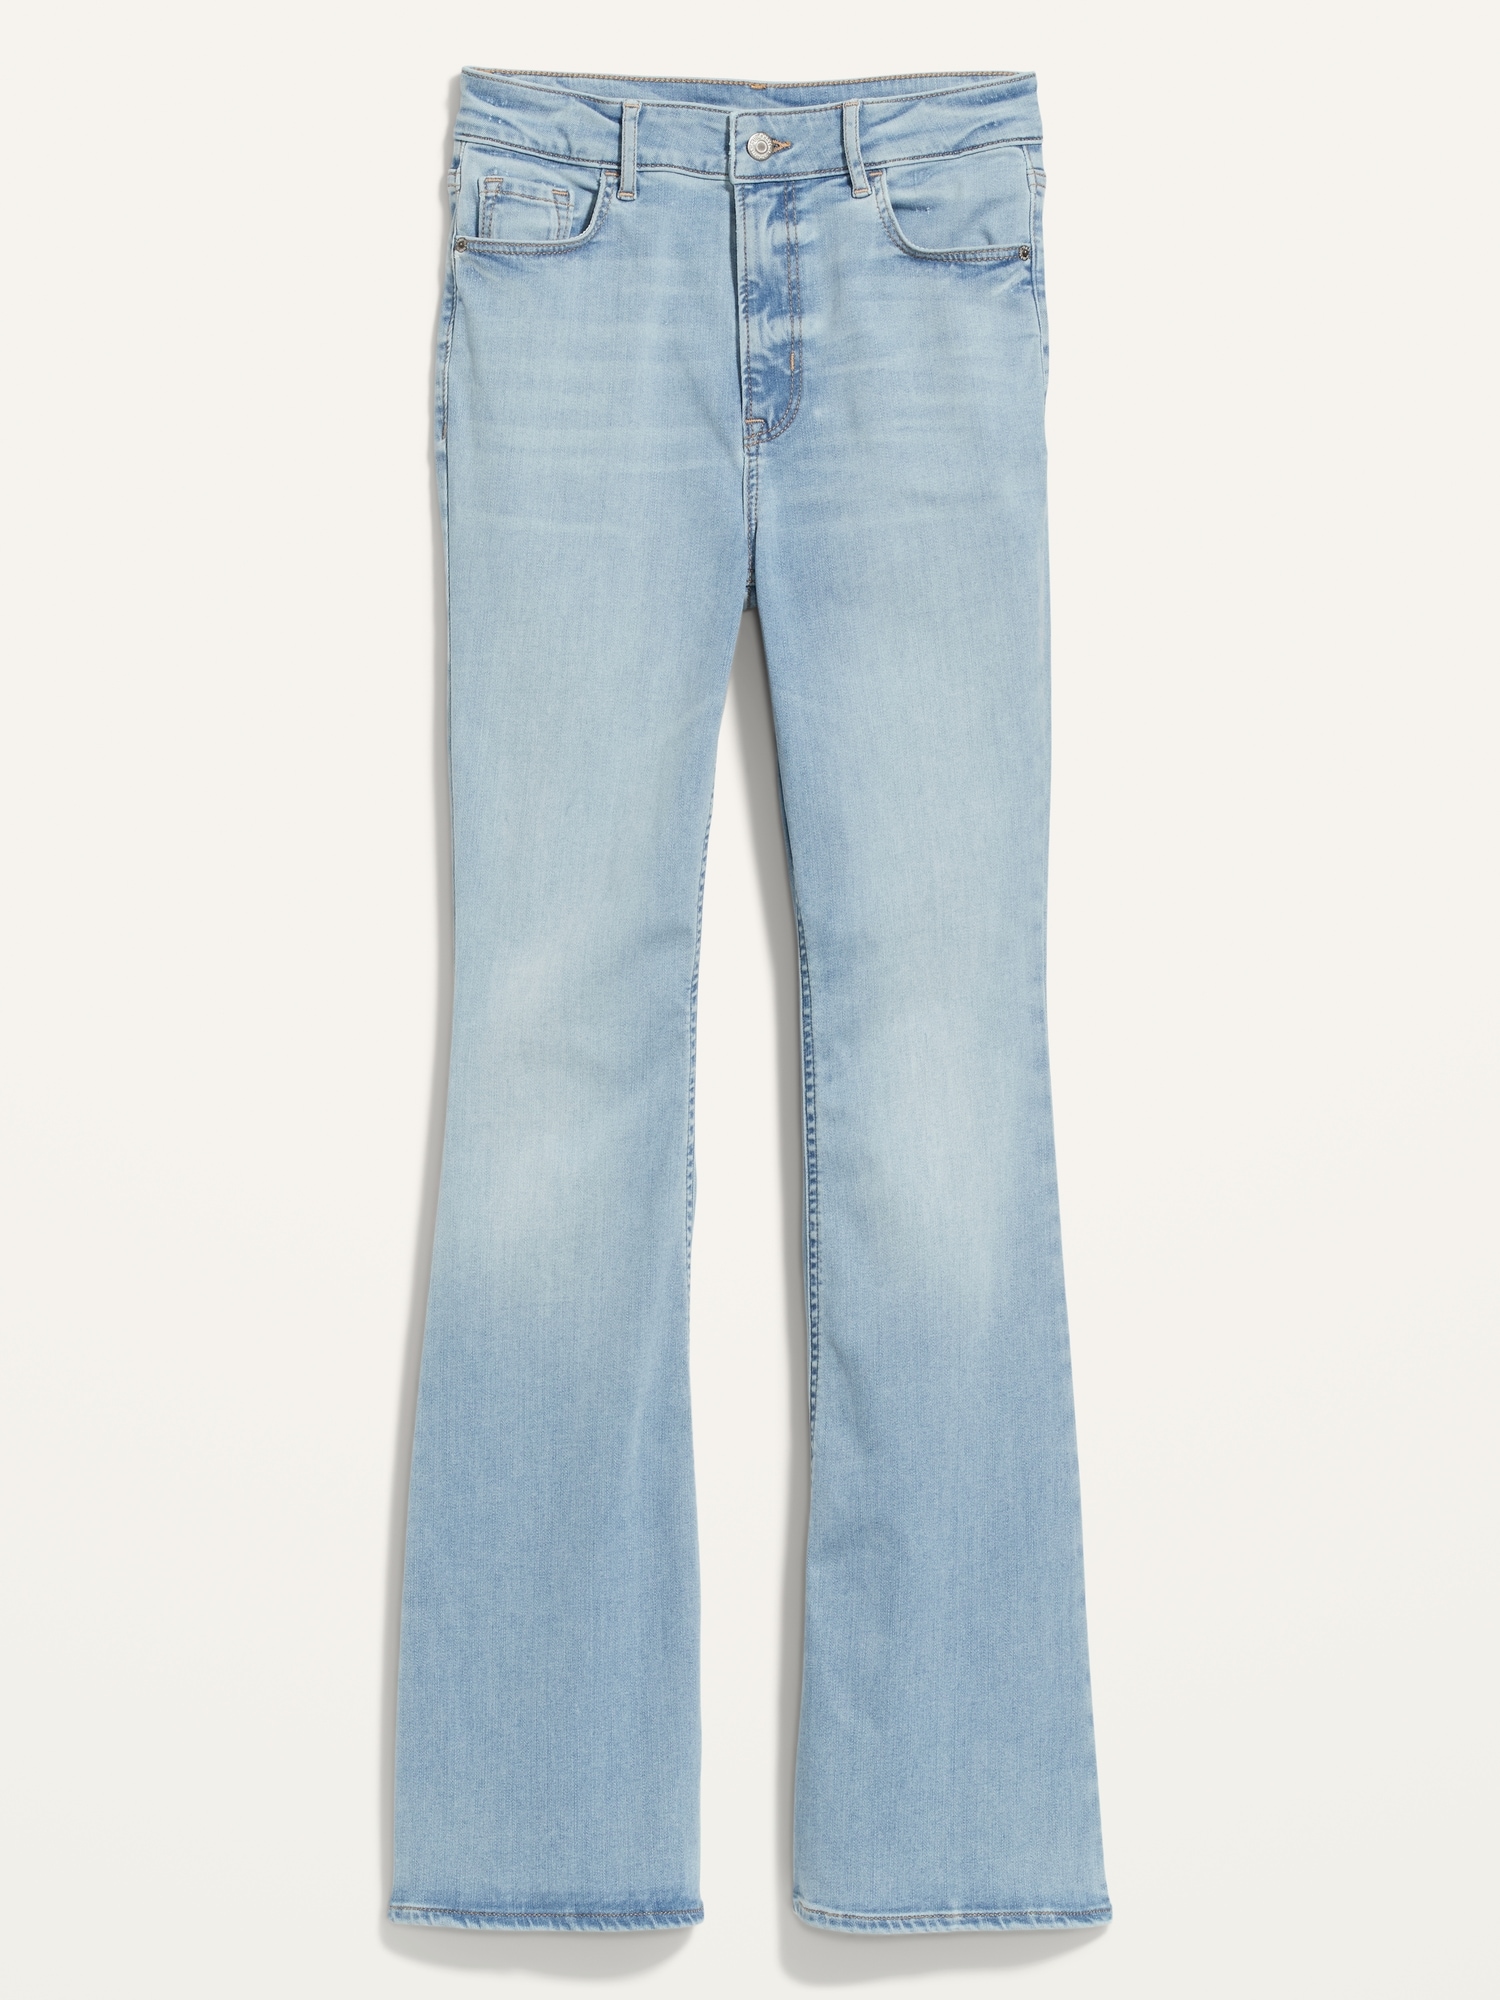 ELLERY Blue Denim High Rise Mega Flare Ruffle Bell Bottom Jeans - Size 26